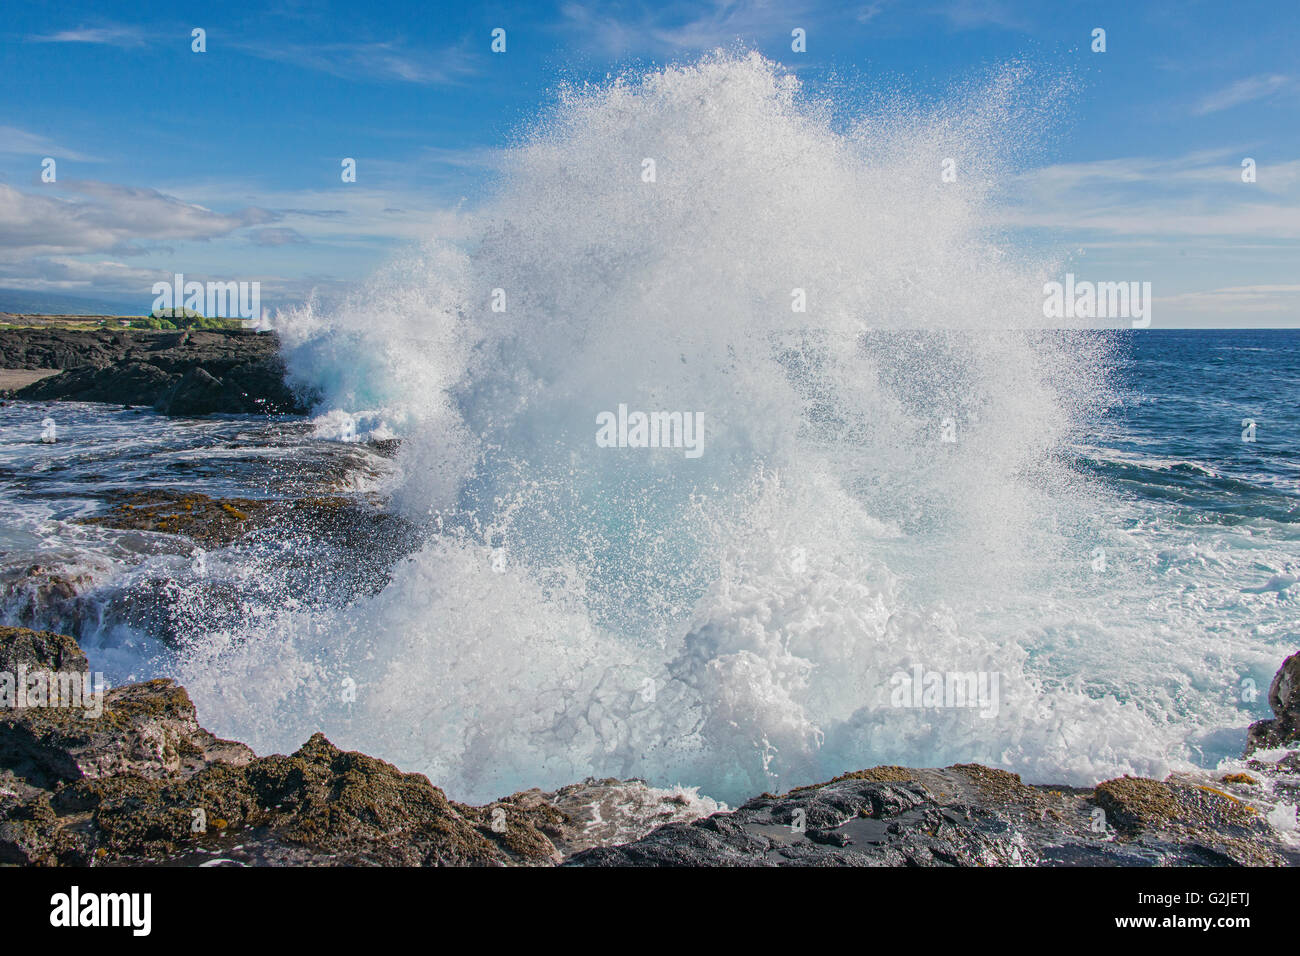 Les vagues se brisant, Wawaloli Beach Park, New Jersey Island (Big Island). Les îles Hawaïennes, le centre de l'océan Pacifique, USA Banque D'Images